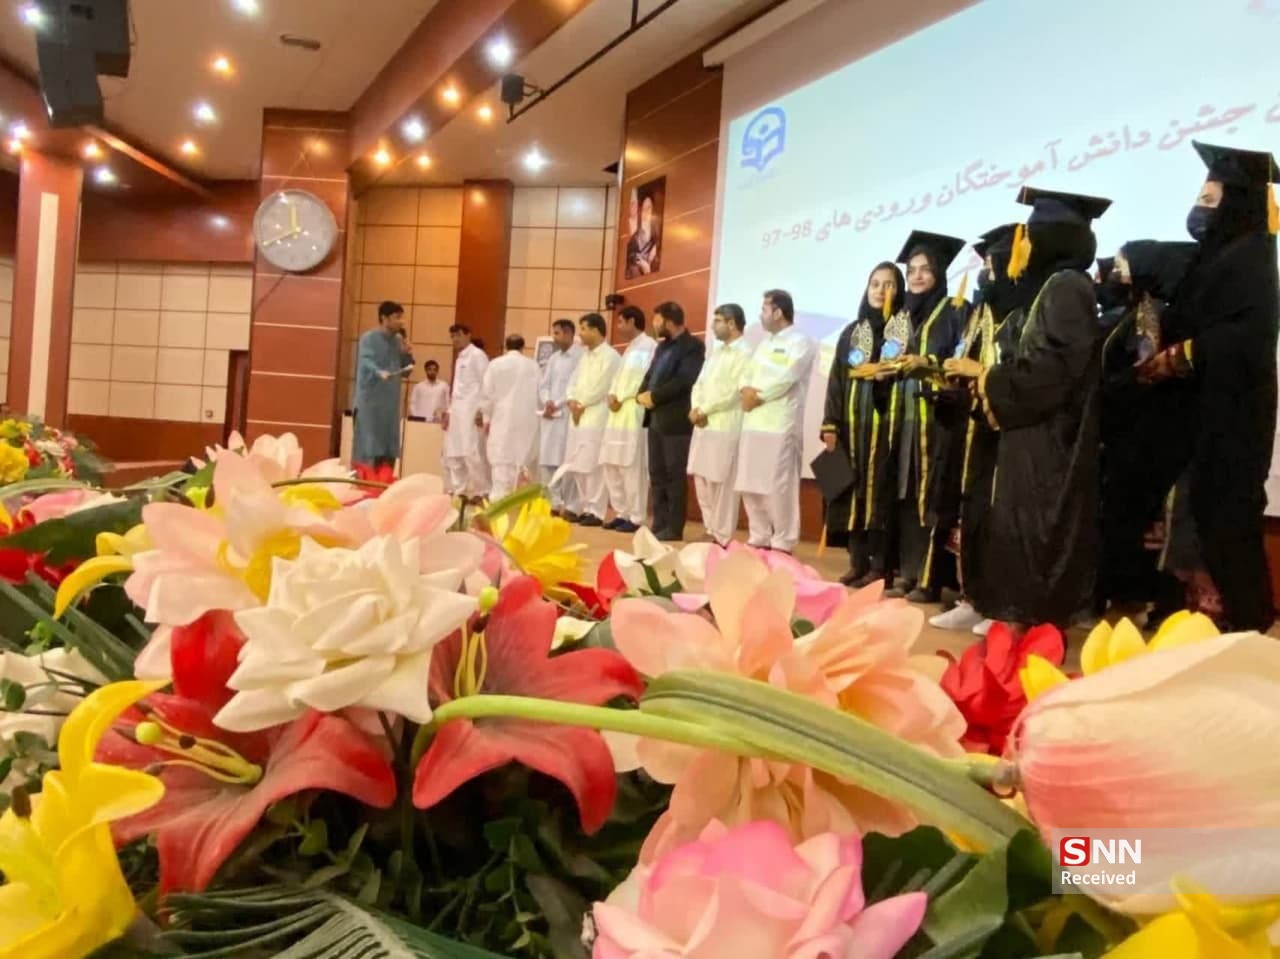 برگزاری جشن فارغ التحصیلی اولین دوره دانشجو معلمان واحد ایرانشهر / ۶۸۰ دانشجومعلم در این واحد آموزشی مشغول تحصیل هستند